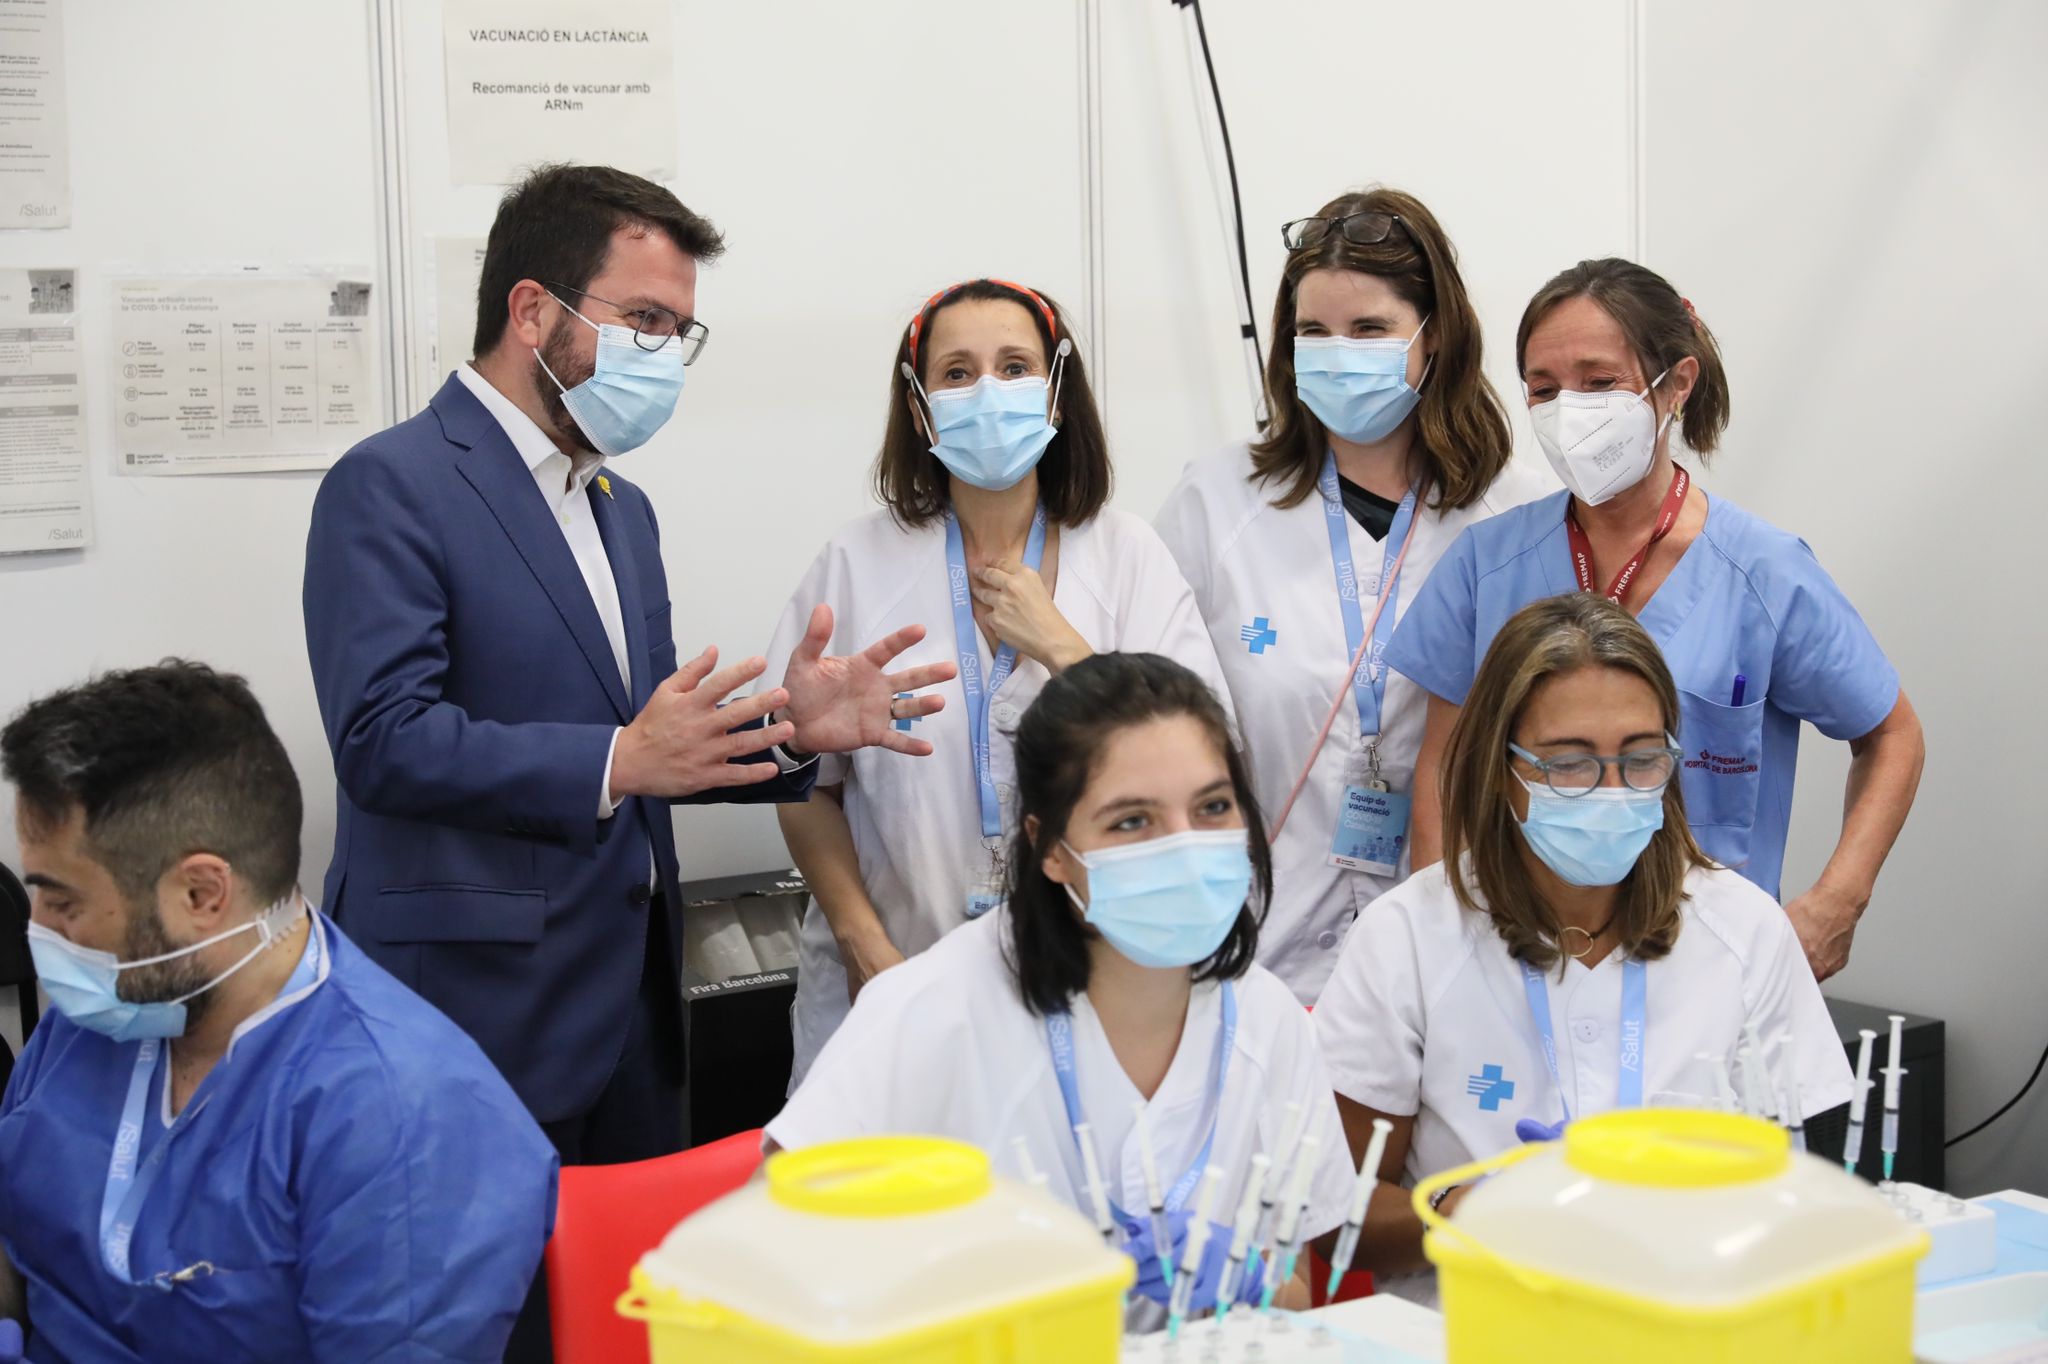 Visita al centre de vacunació contra la Covid-19 de Fira de Barcelona